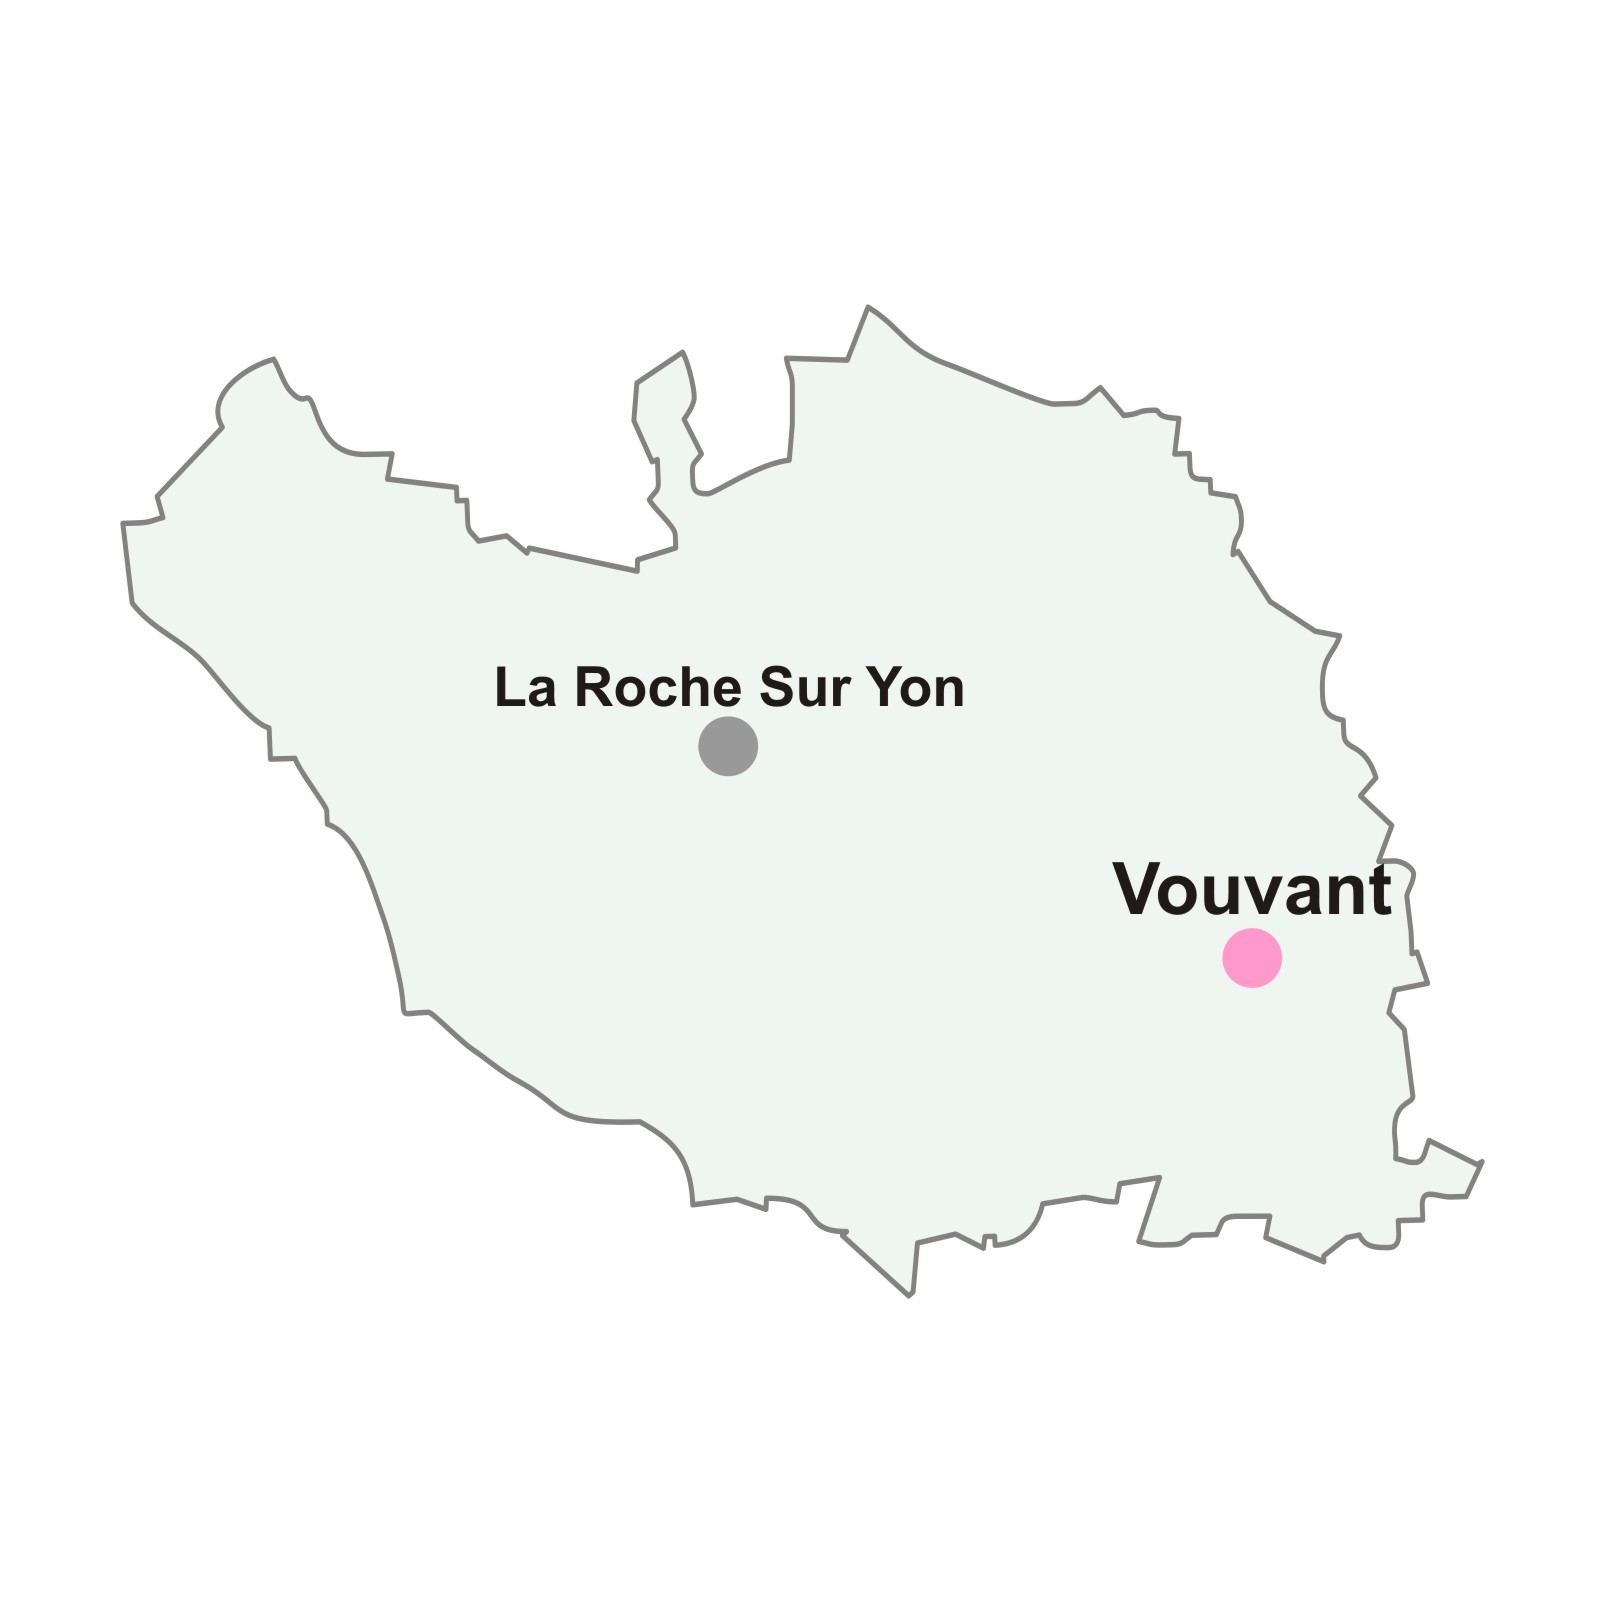 Carte gris clair contour gris foncé du département de la Vendée avec un rond rose pour la position de la ville de Vouvant et un point gris pour la ville de La Roche sur Yon